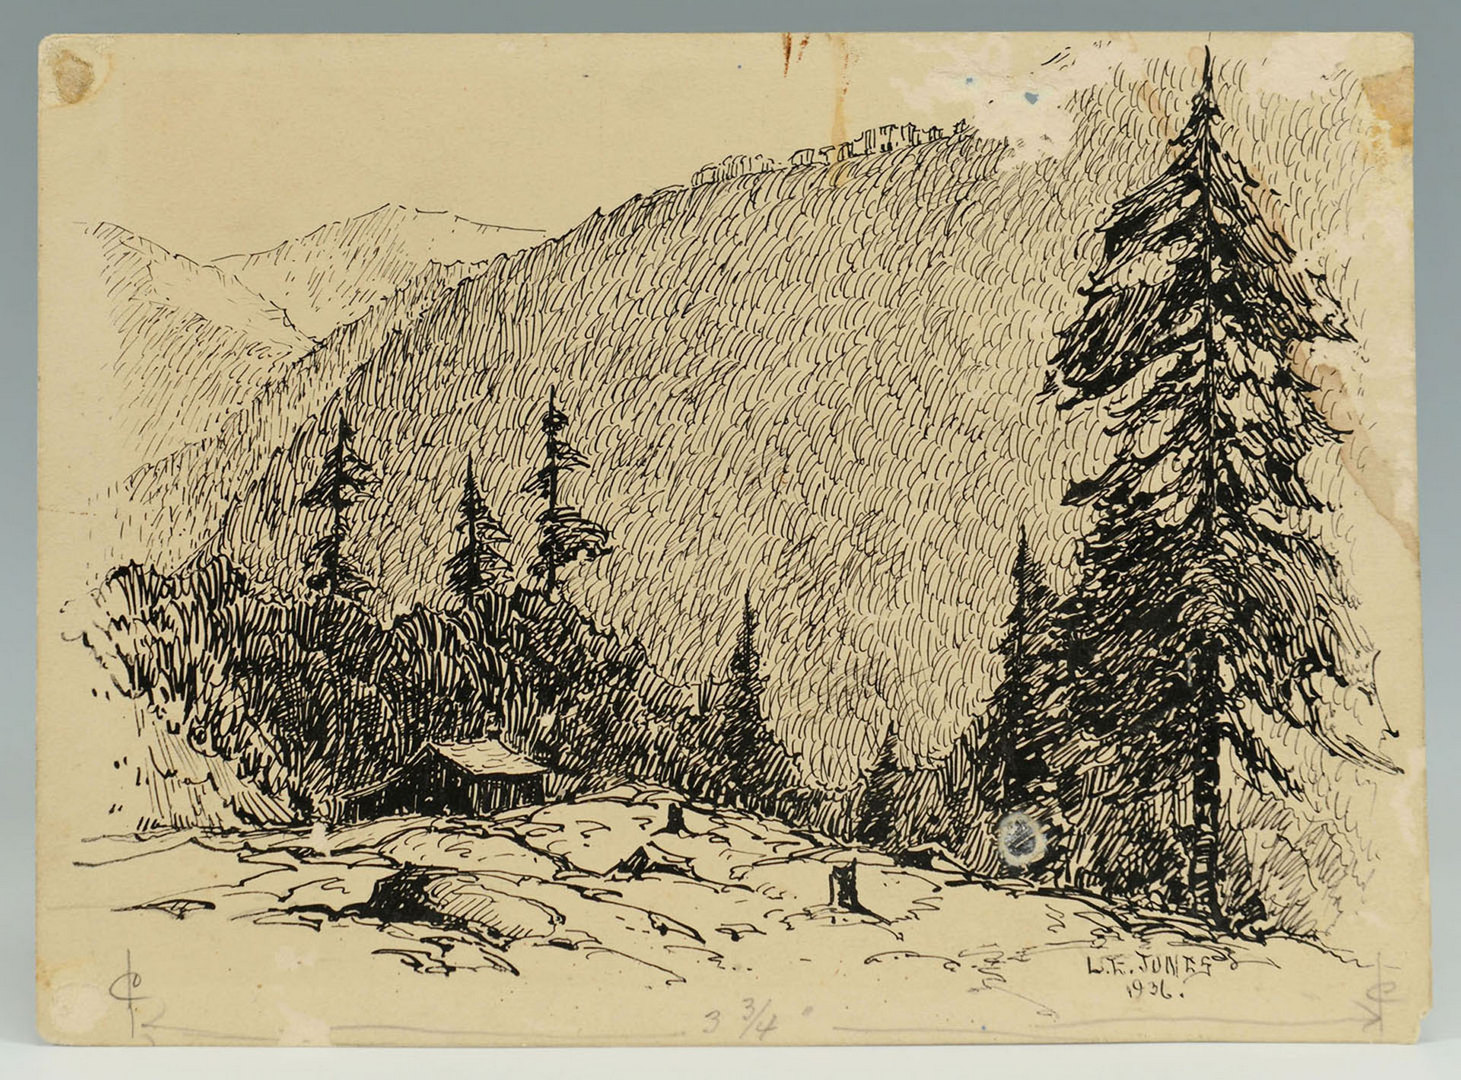 Lot 176: Two Louis Jones ink drawings of mountain scenes